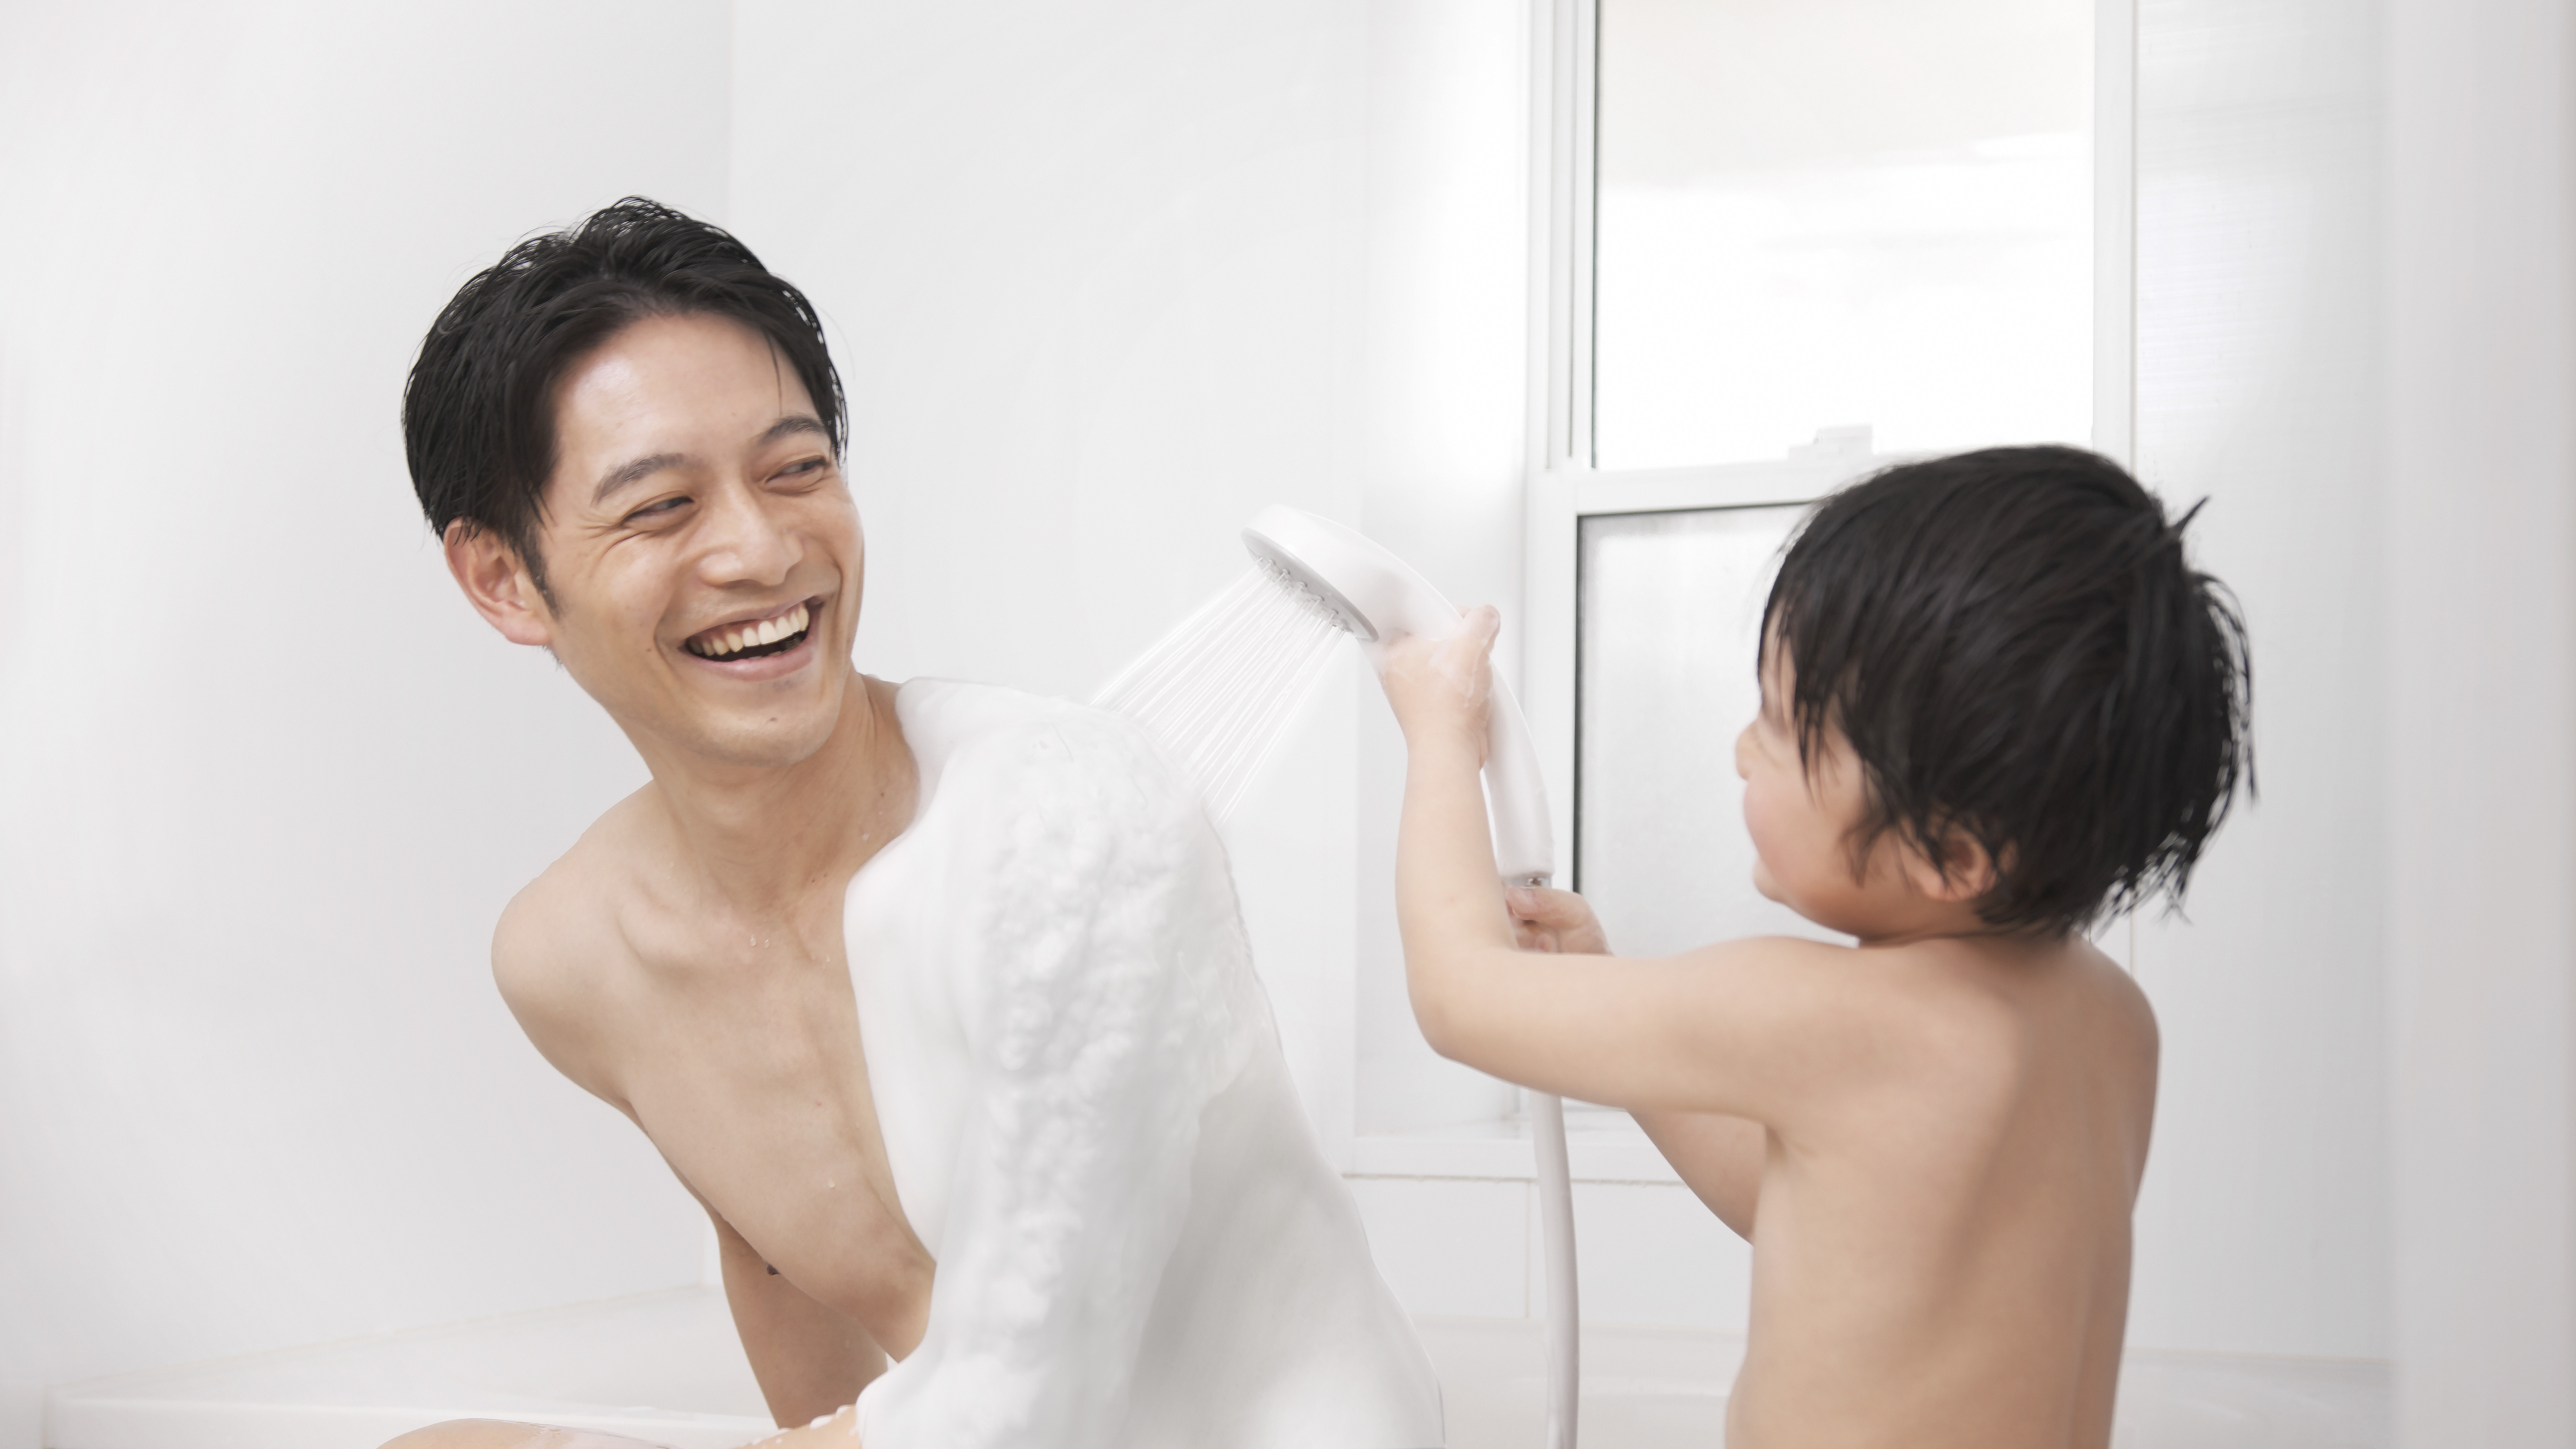 絹泡”を生成する泡シャワー「KINUAMI U」の一般先行予約販売を開始